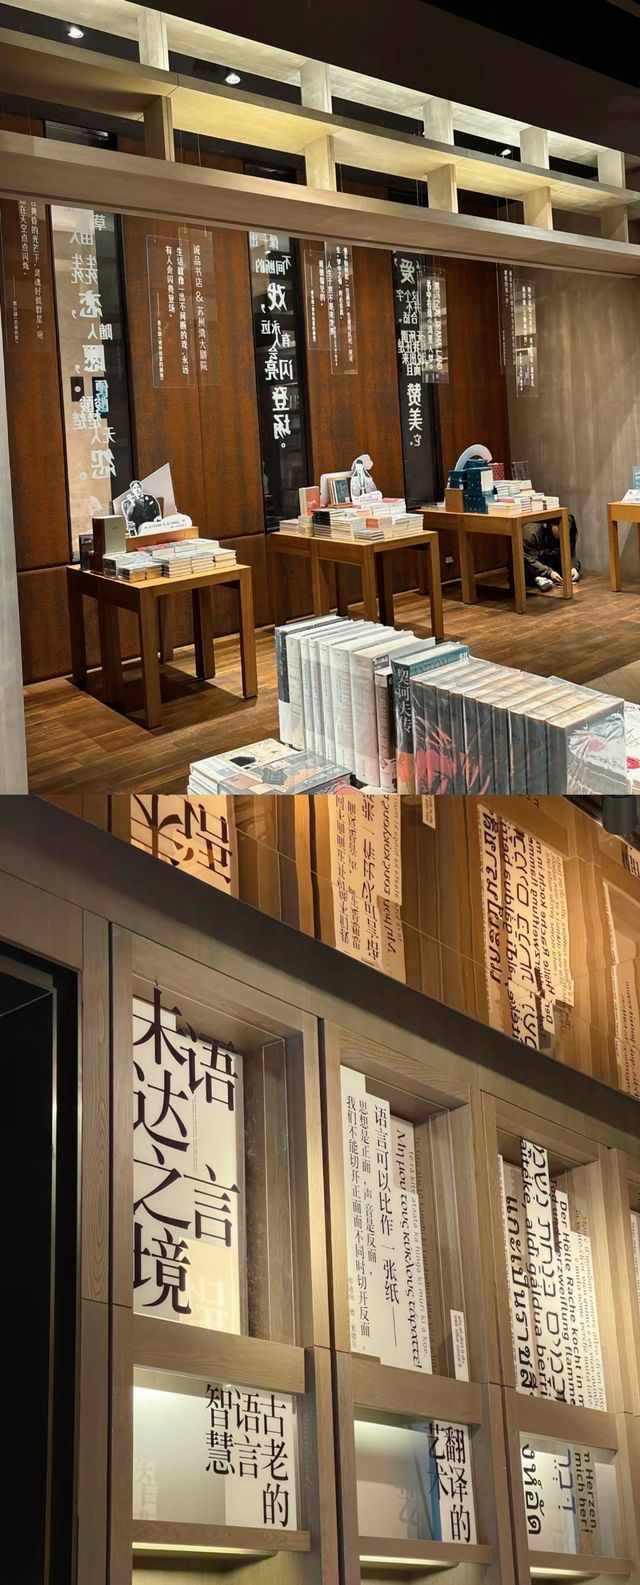 蘇州|誠品書店可以待一天的書店